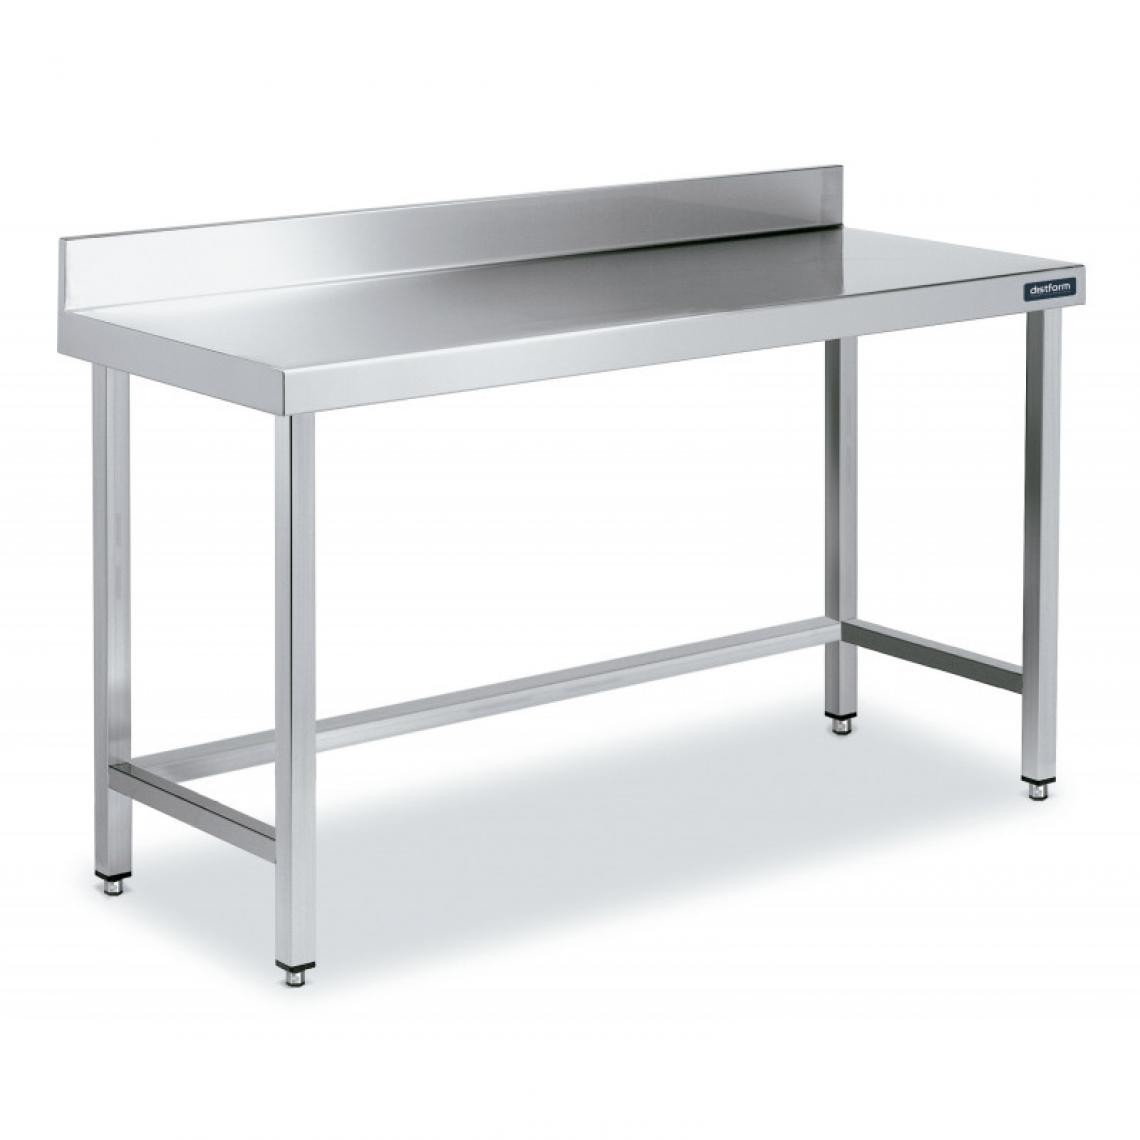 DISTFORM - Table Adossée en Inox avec Renforts Profondeur 550 mm - Distform - Acier inoxydable1000x550 - Tables à manger